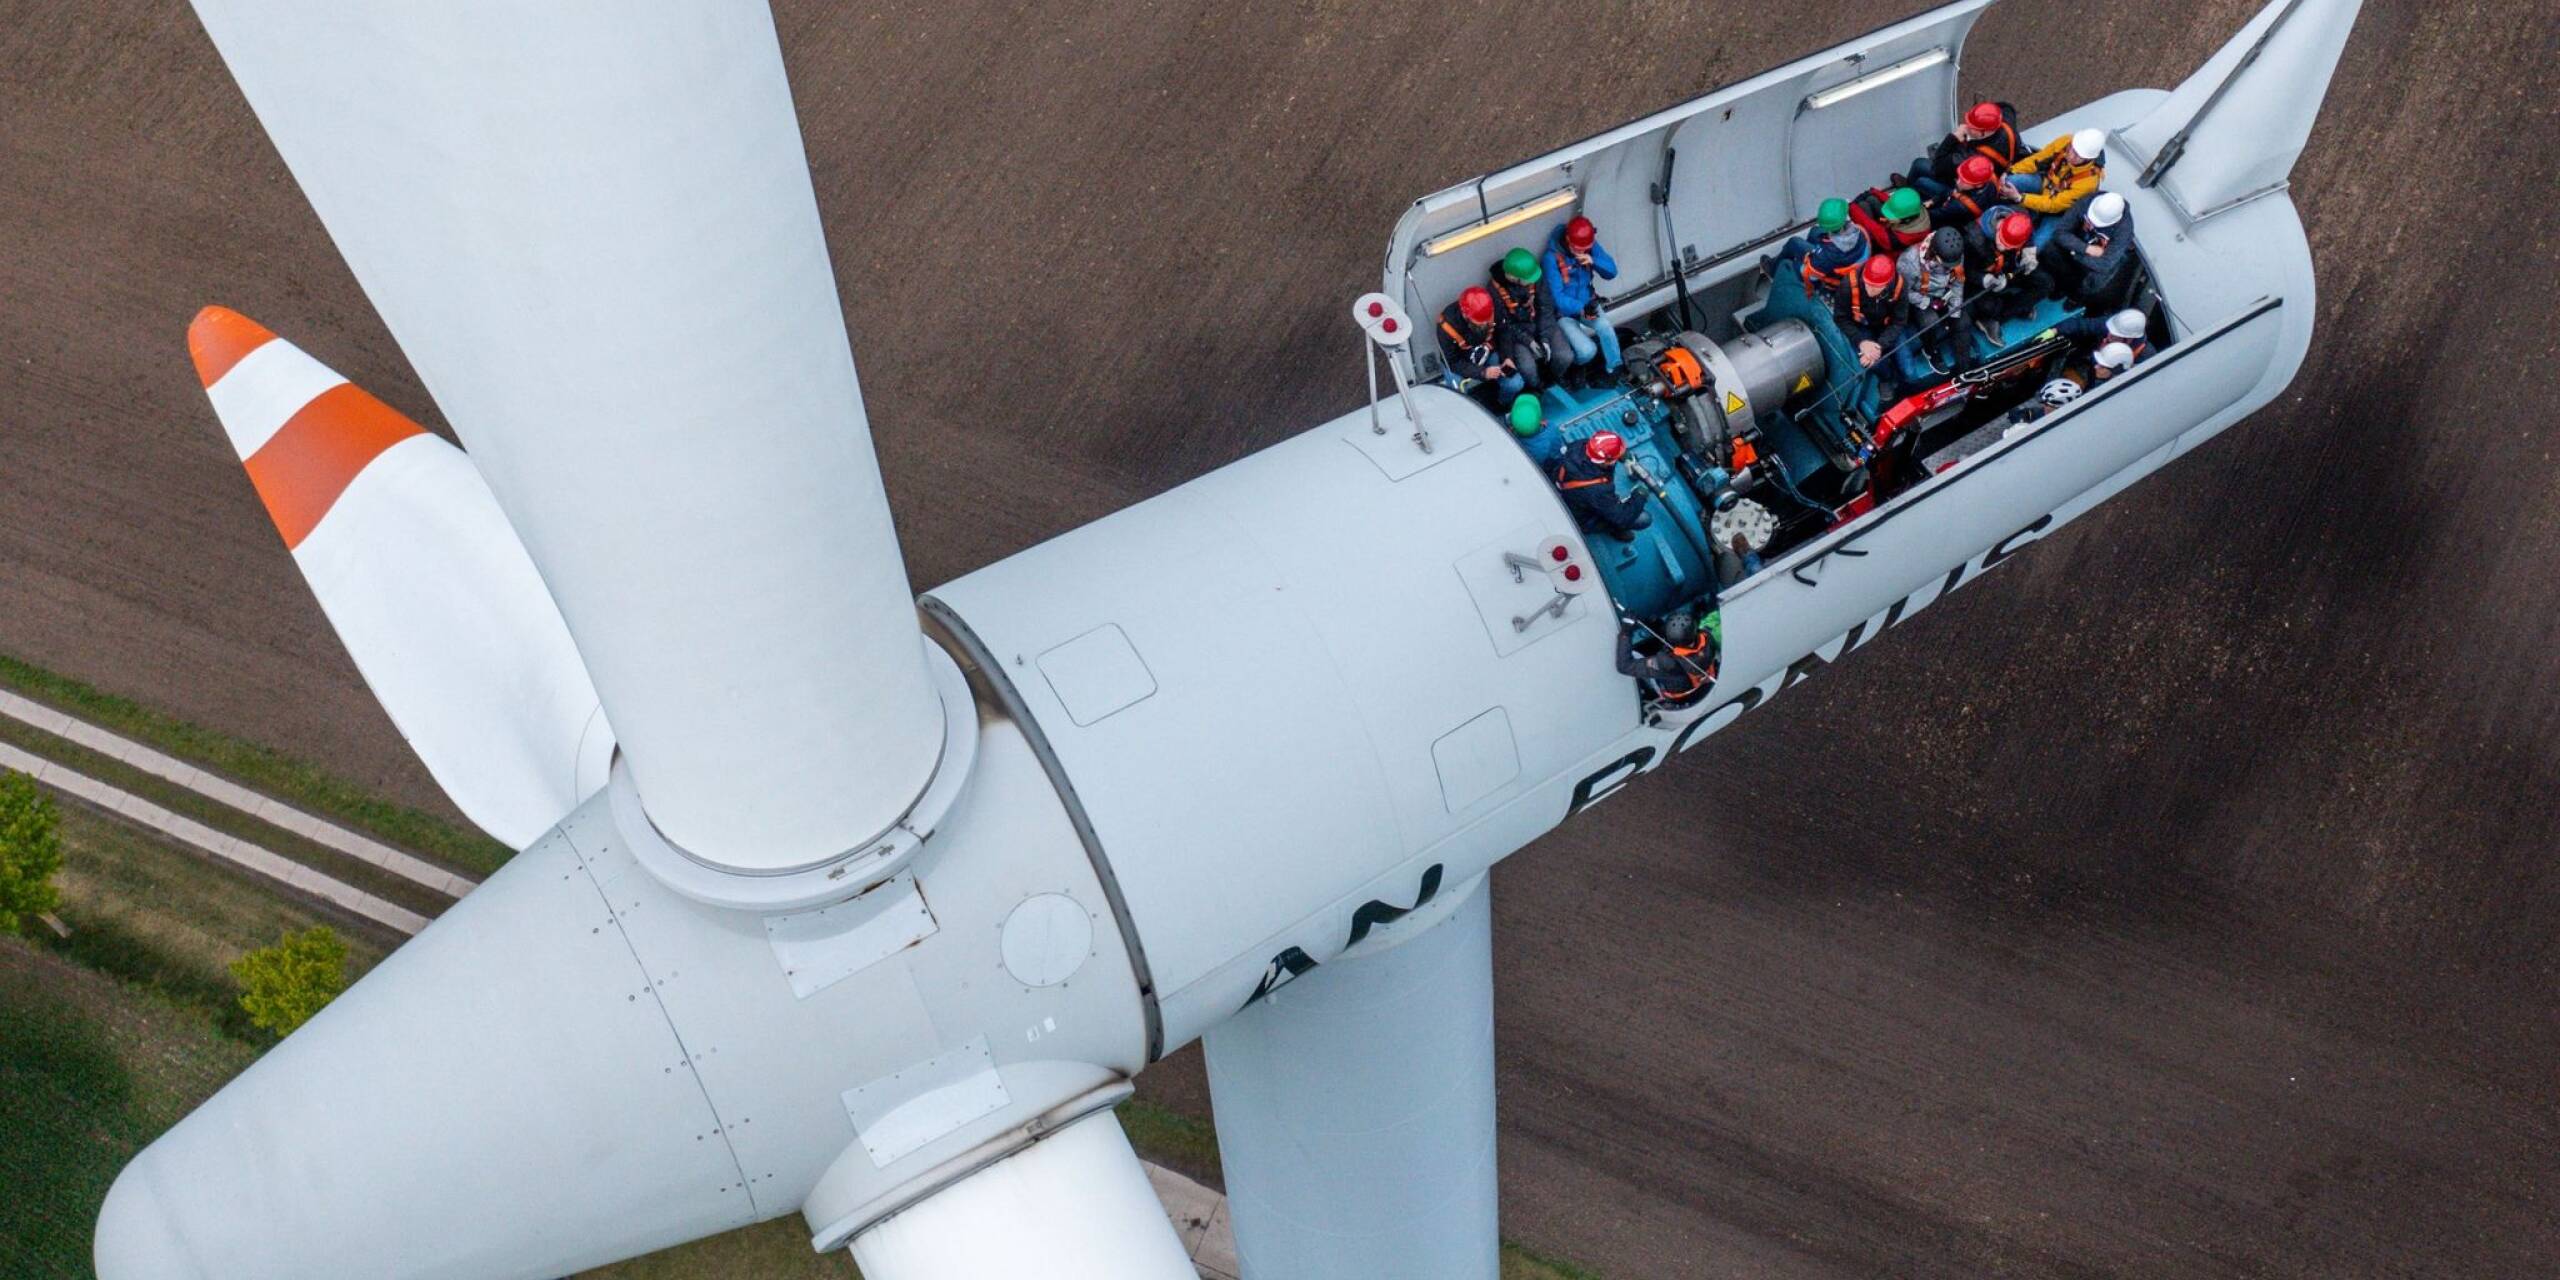 Bürgermeister, Lokalpolitiker und interessierte Bürger besichtigten in Rostock die Turbinen auf einer Windkraftanlage mit geöffnetem Dach. Bereits vor dem Tag der Erneuerbaren Energien (27.04.) kann das Windrad besichtigt werden.